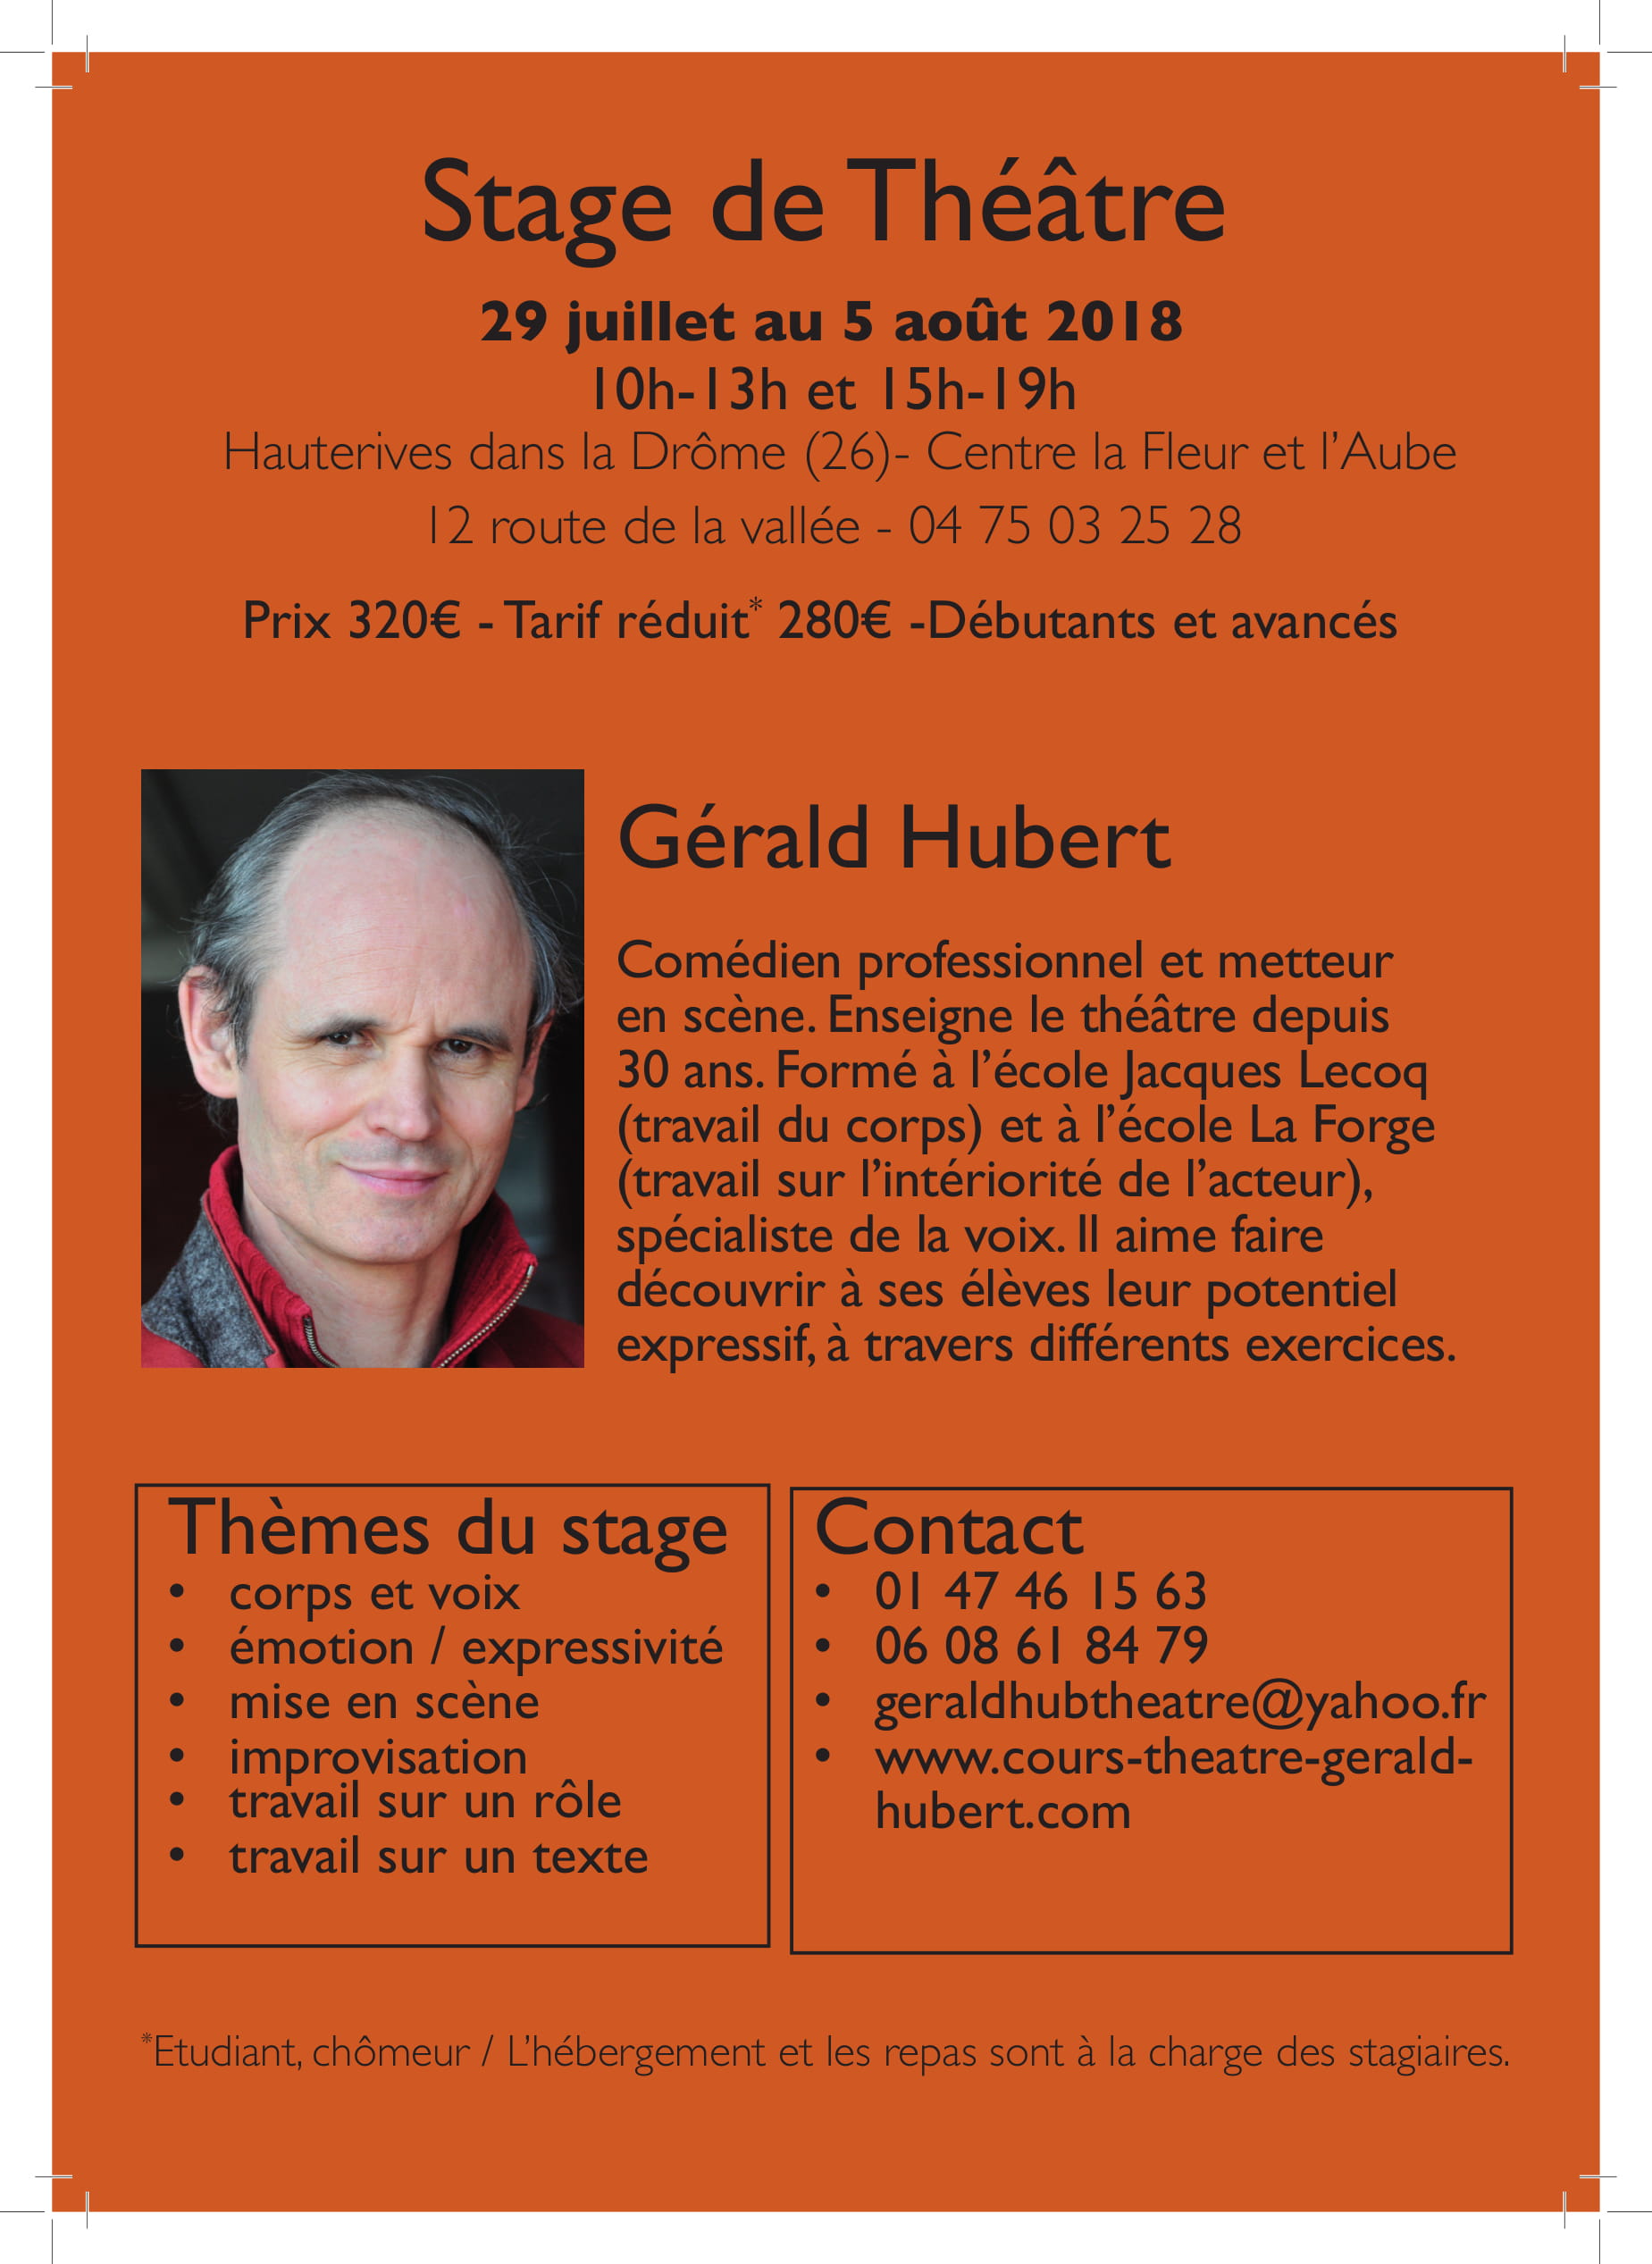 Gérald Hubert vous propose un stage de théâtre tous niveaux dans la Drôme (26) du 29 juillet au 5 août 2018. Eté 2018